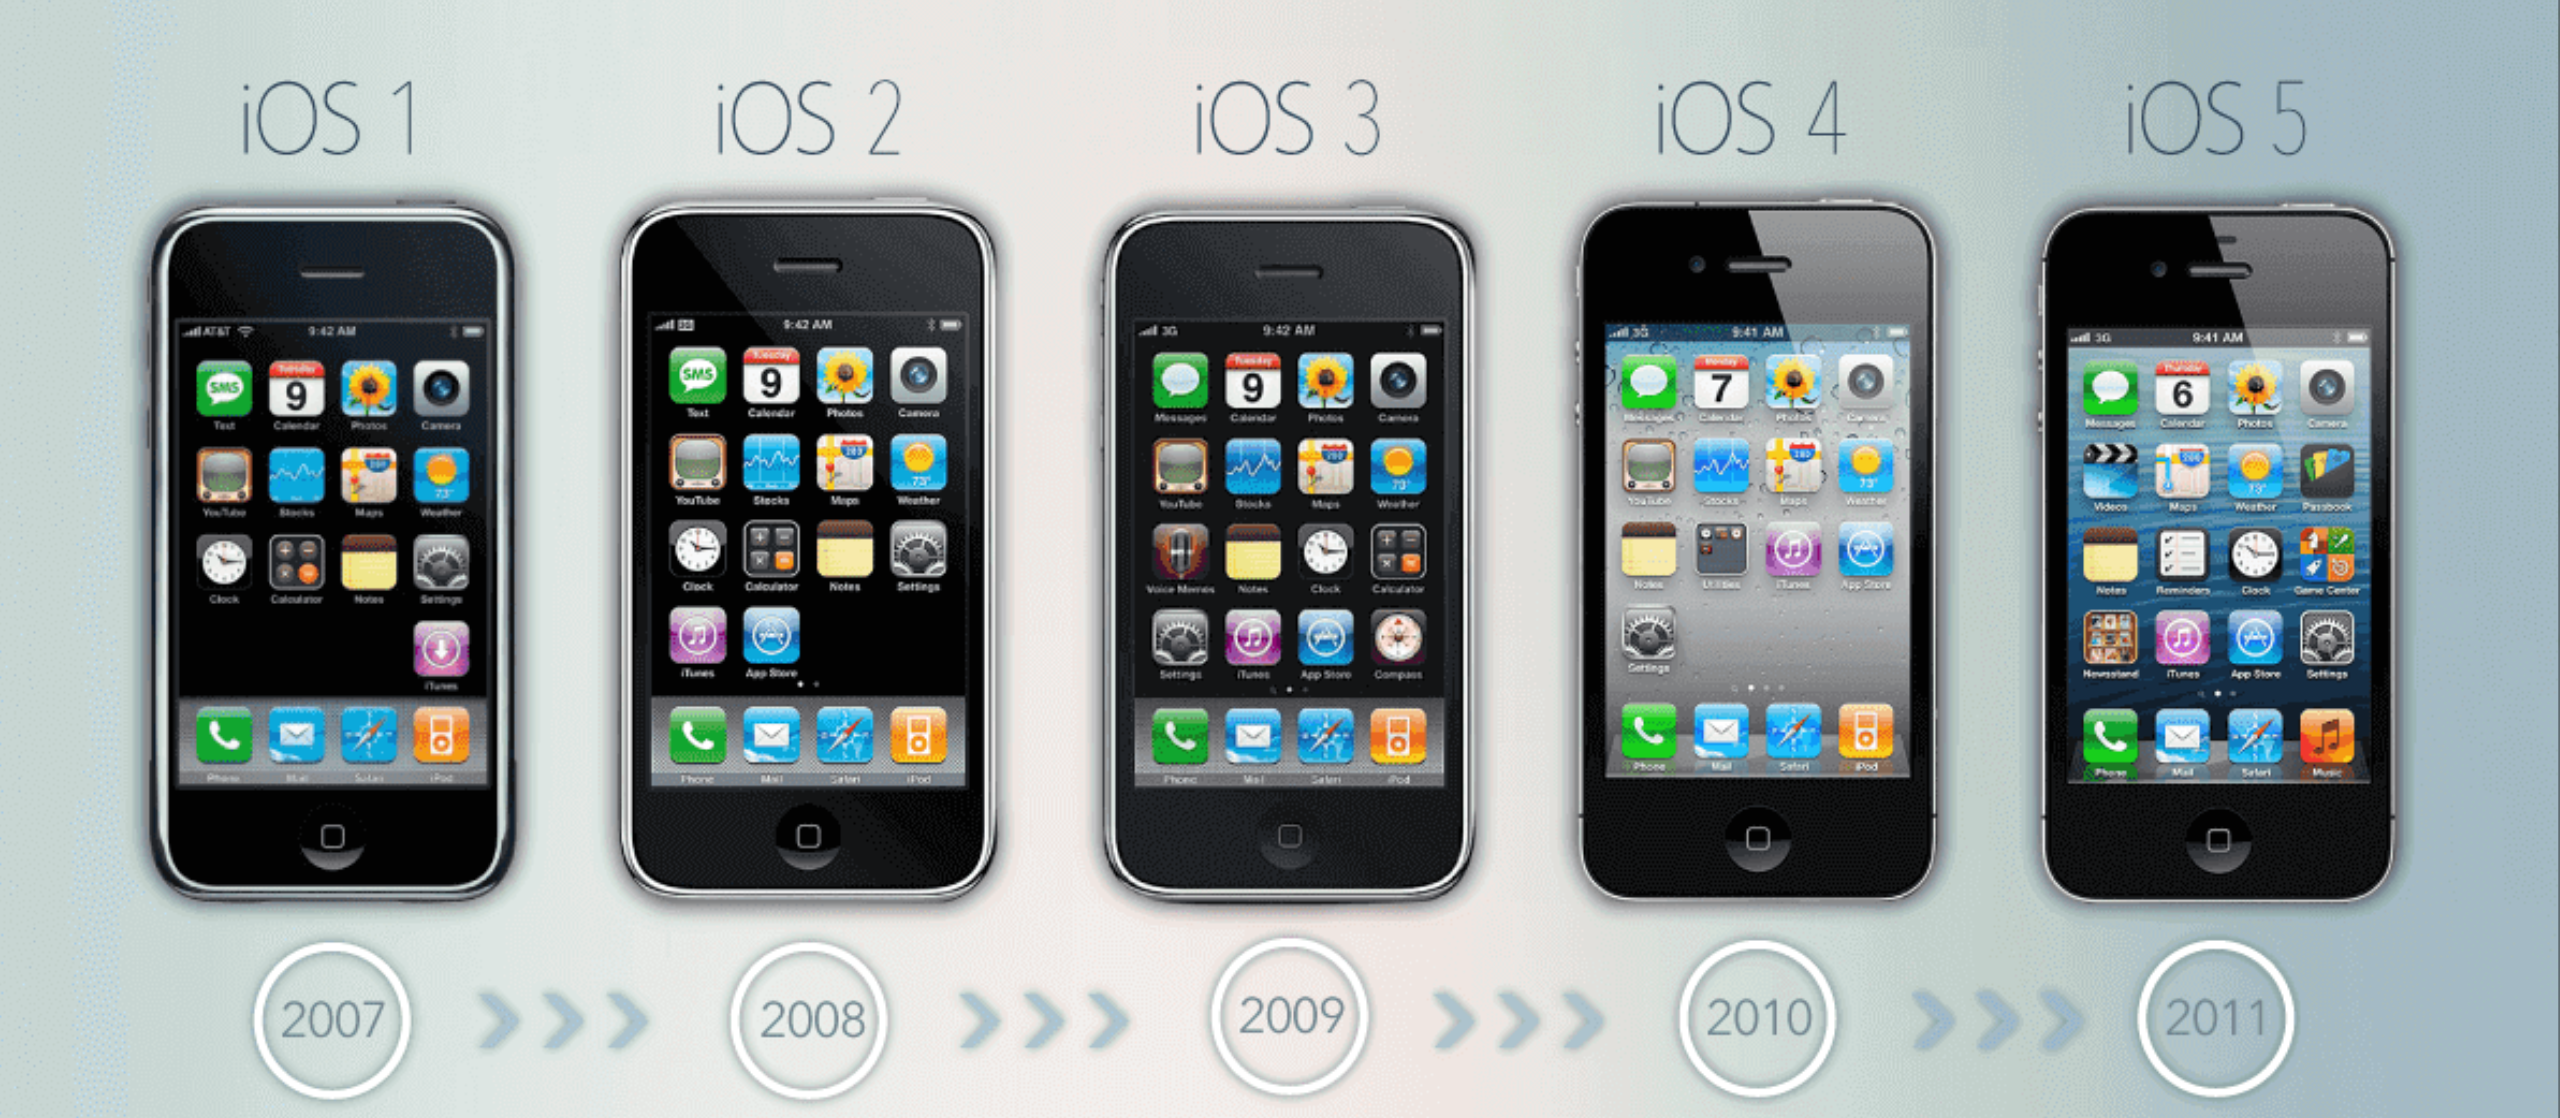 Infografía de la evolución de iOS desde iOS1 hasta iOS9